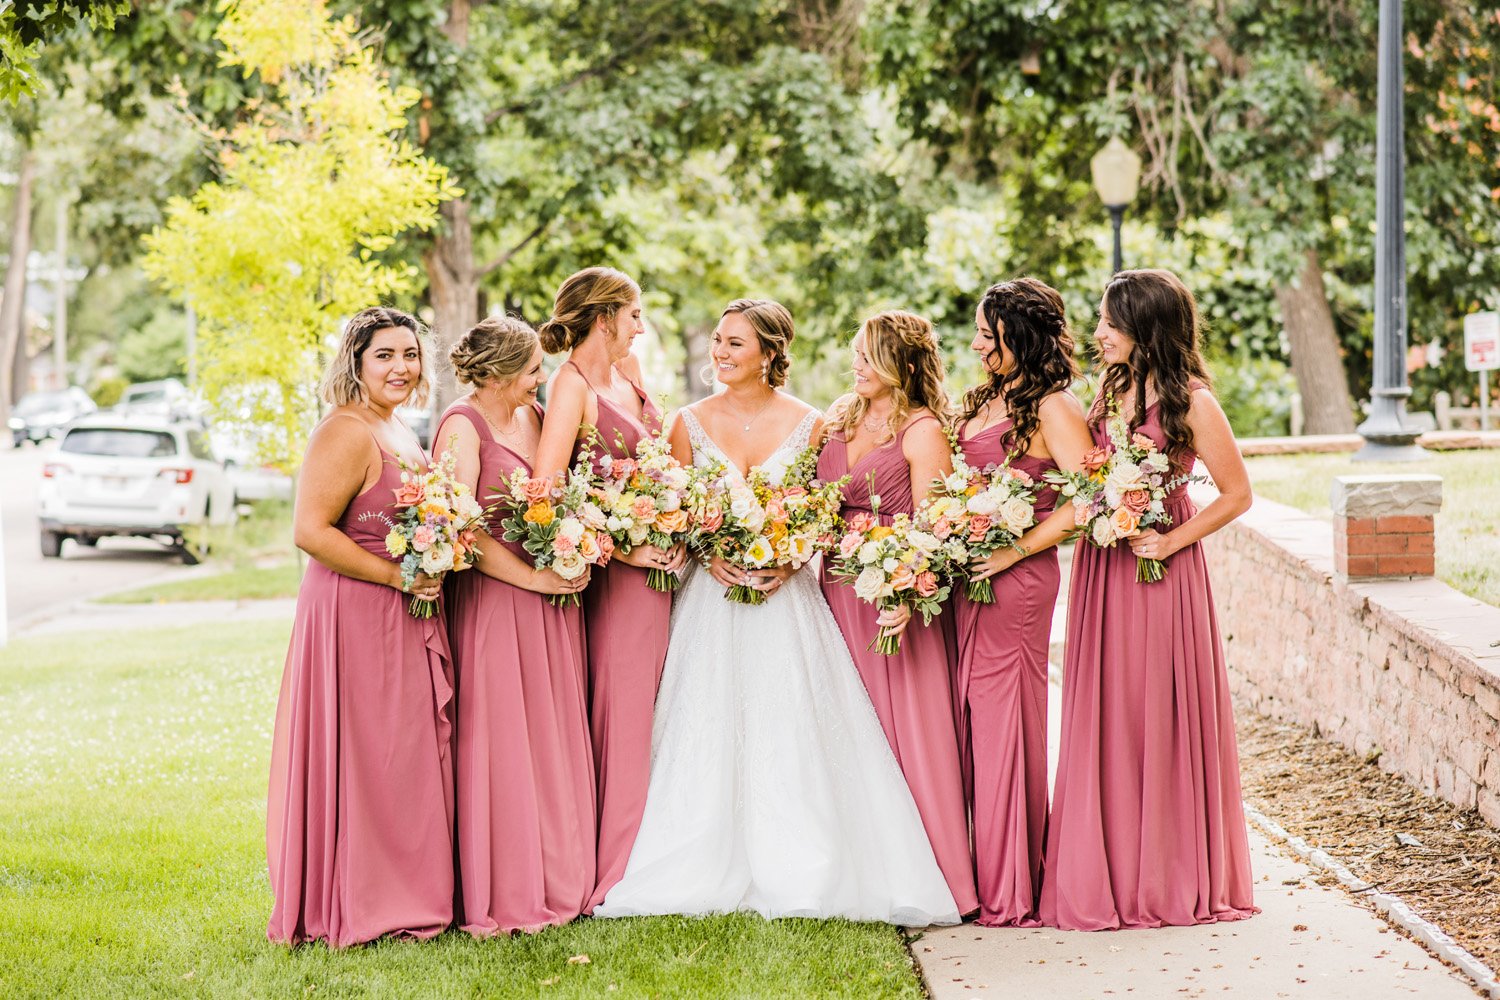 Plume&Furrow-Wedding-Florist-Morgan&Colby-theStVrain-June-Colorado-Function+FlourishPhoto-bridesmaids-bride-bouquets.jpg